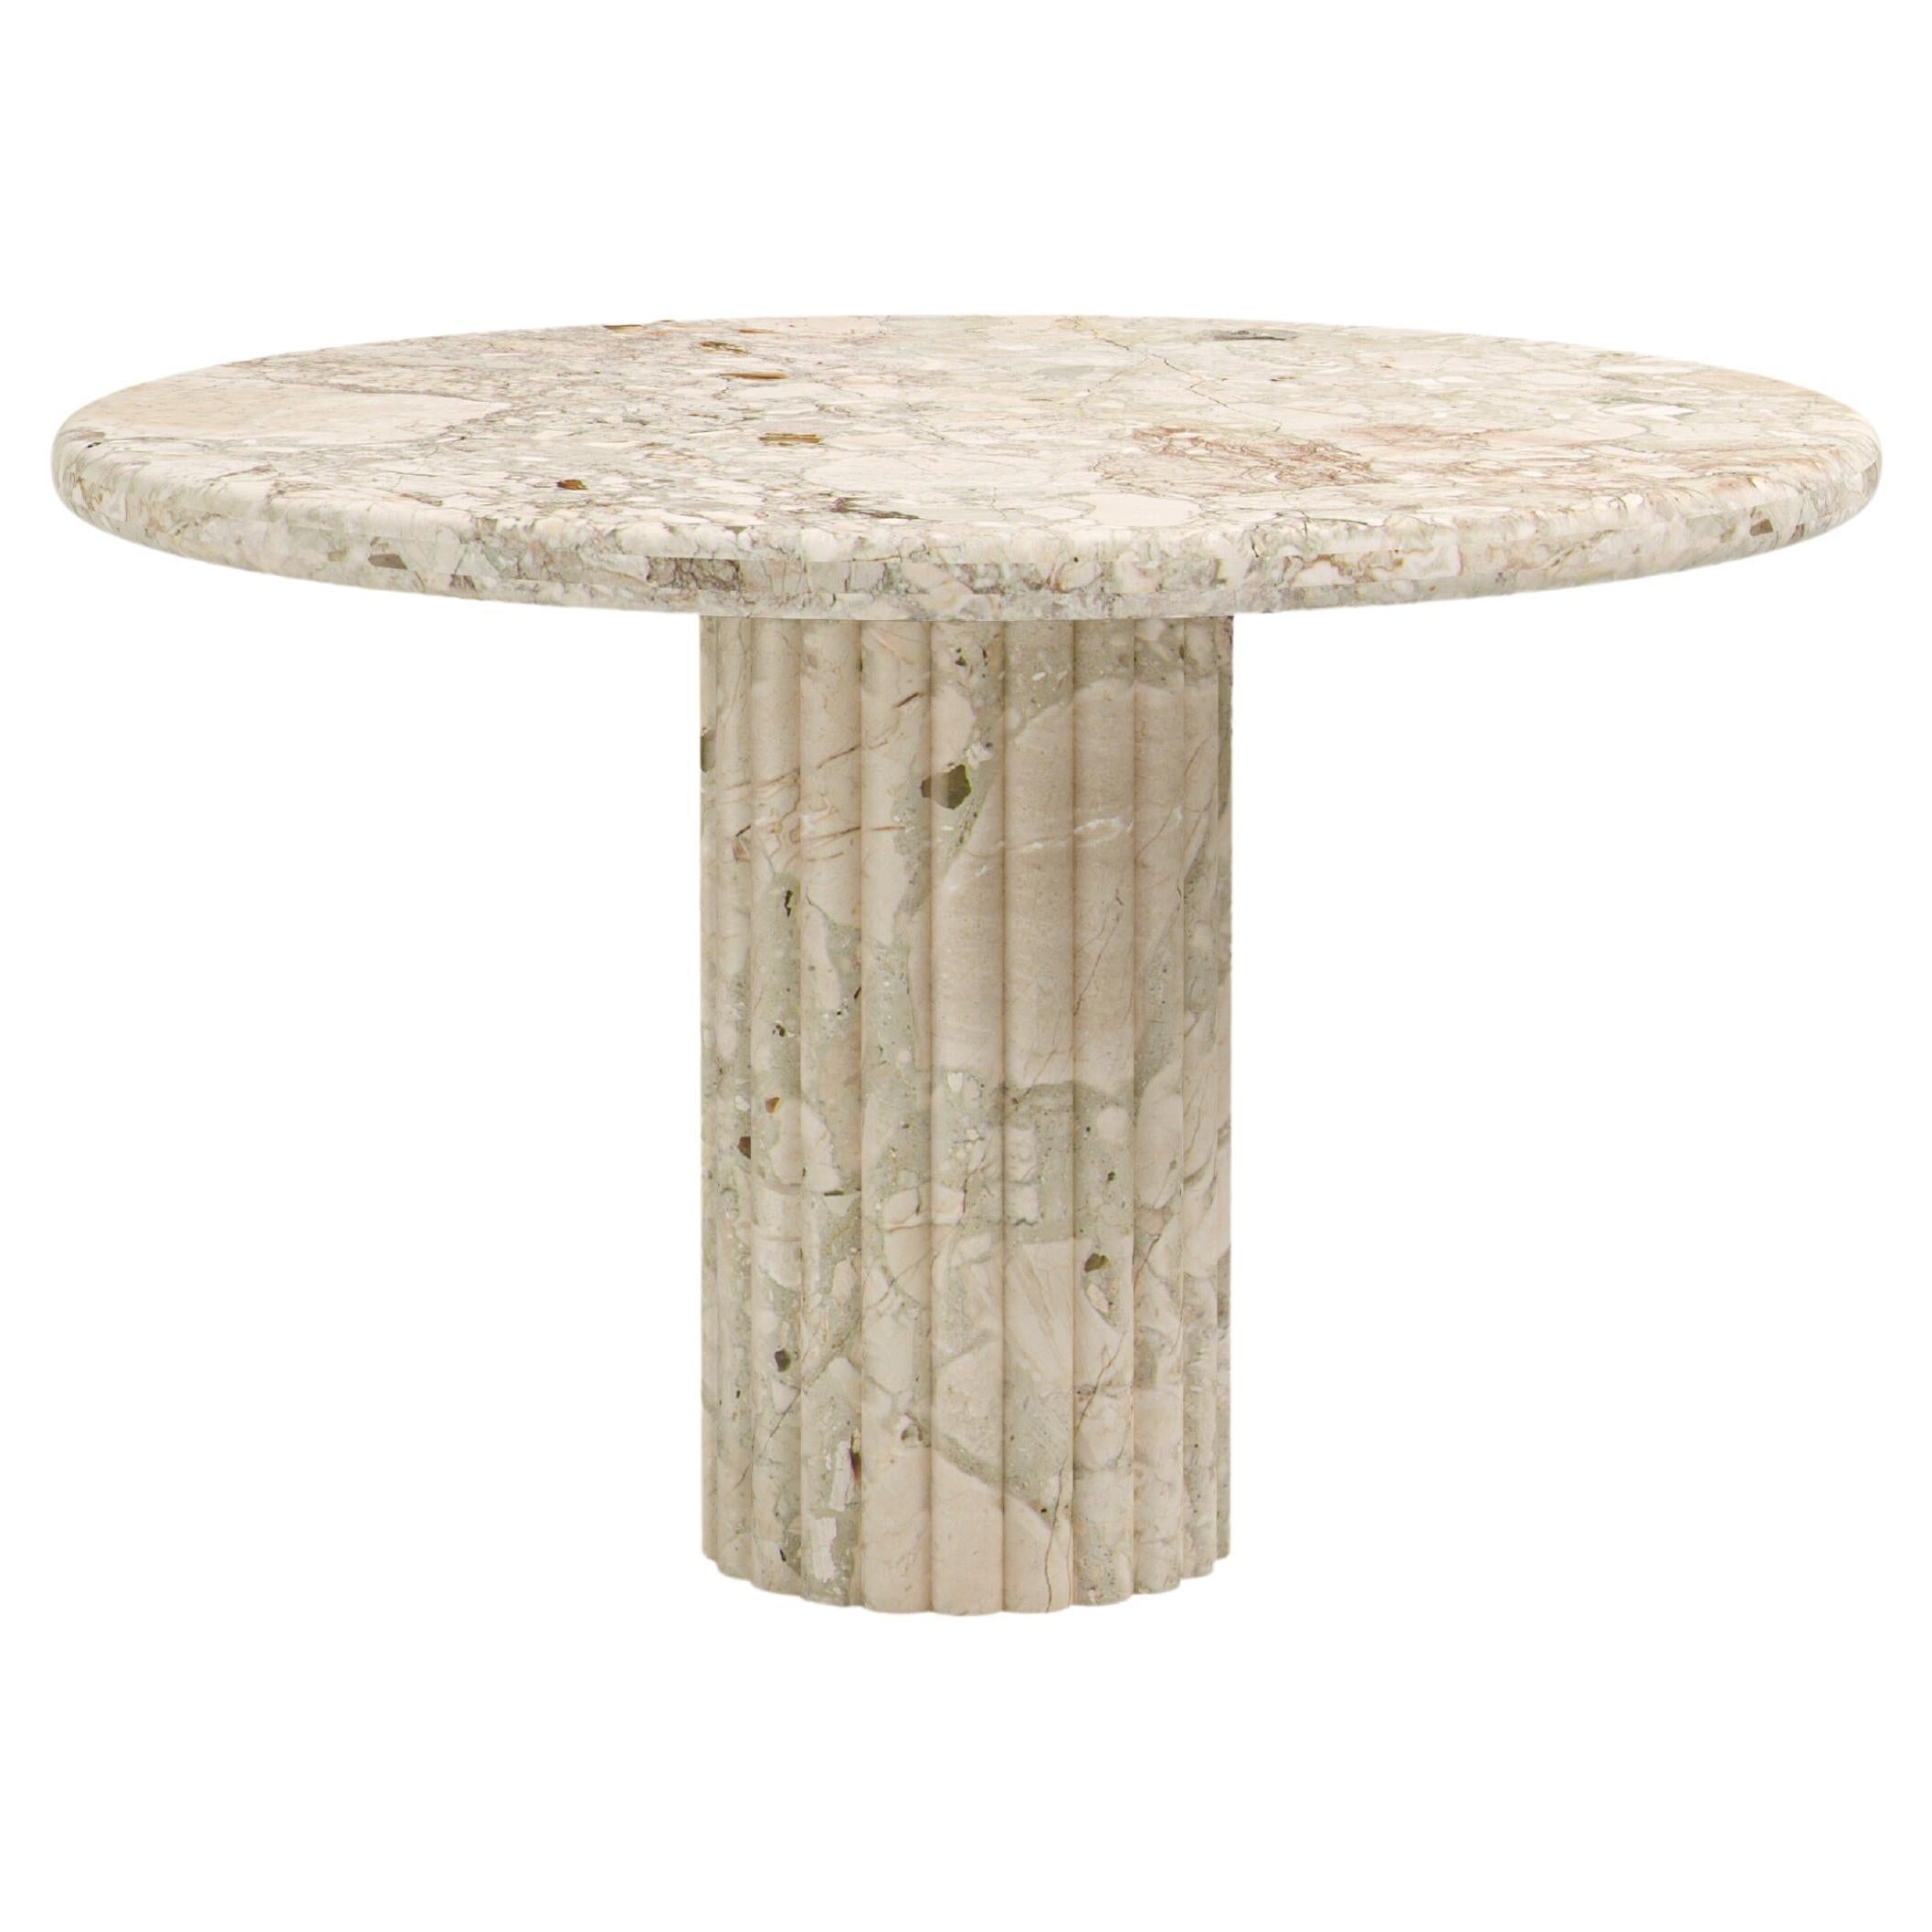 FORM(LA) Fluta Round Dining Table 60”L x 60”W x 30”H Breccia Rosa Marble For Sale